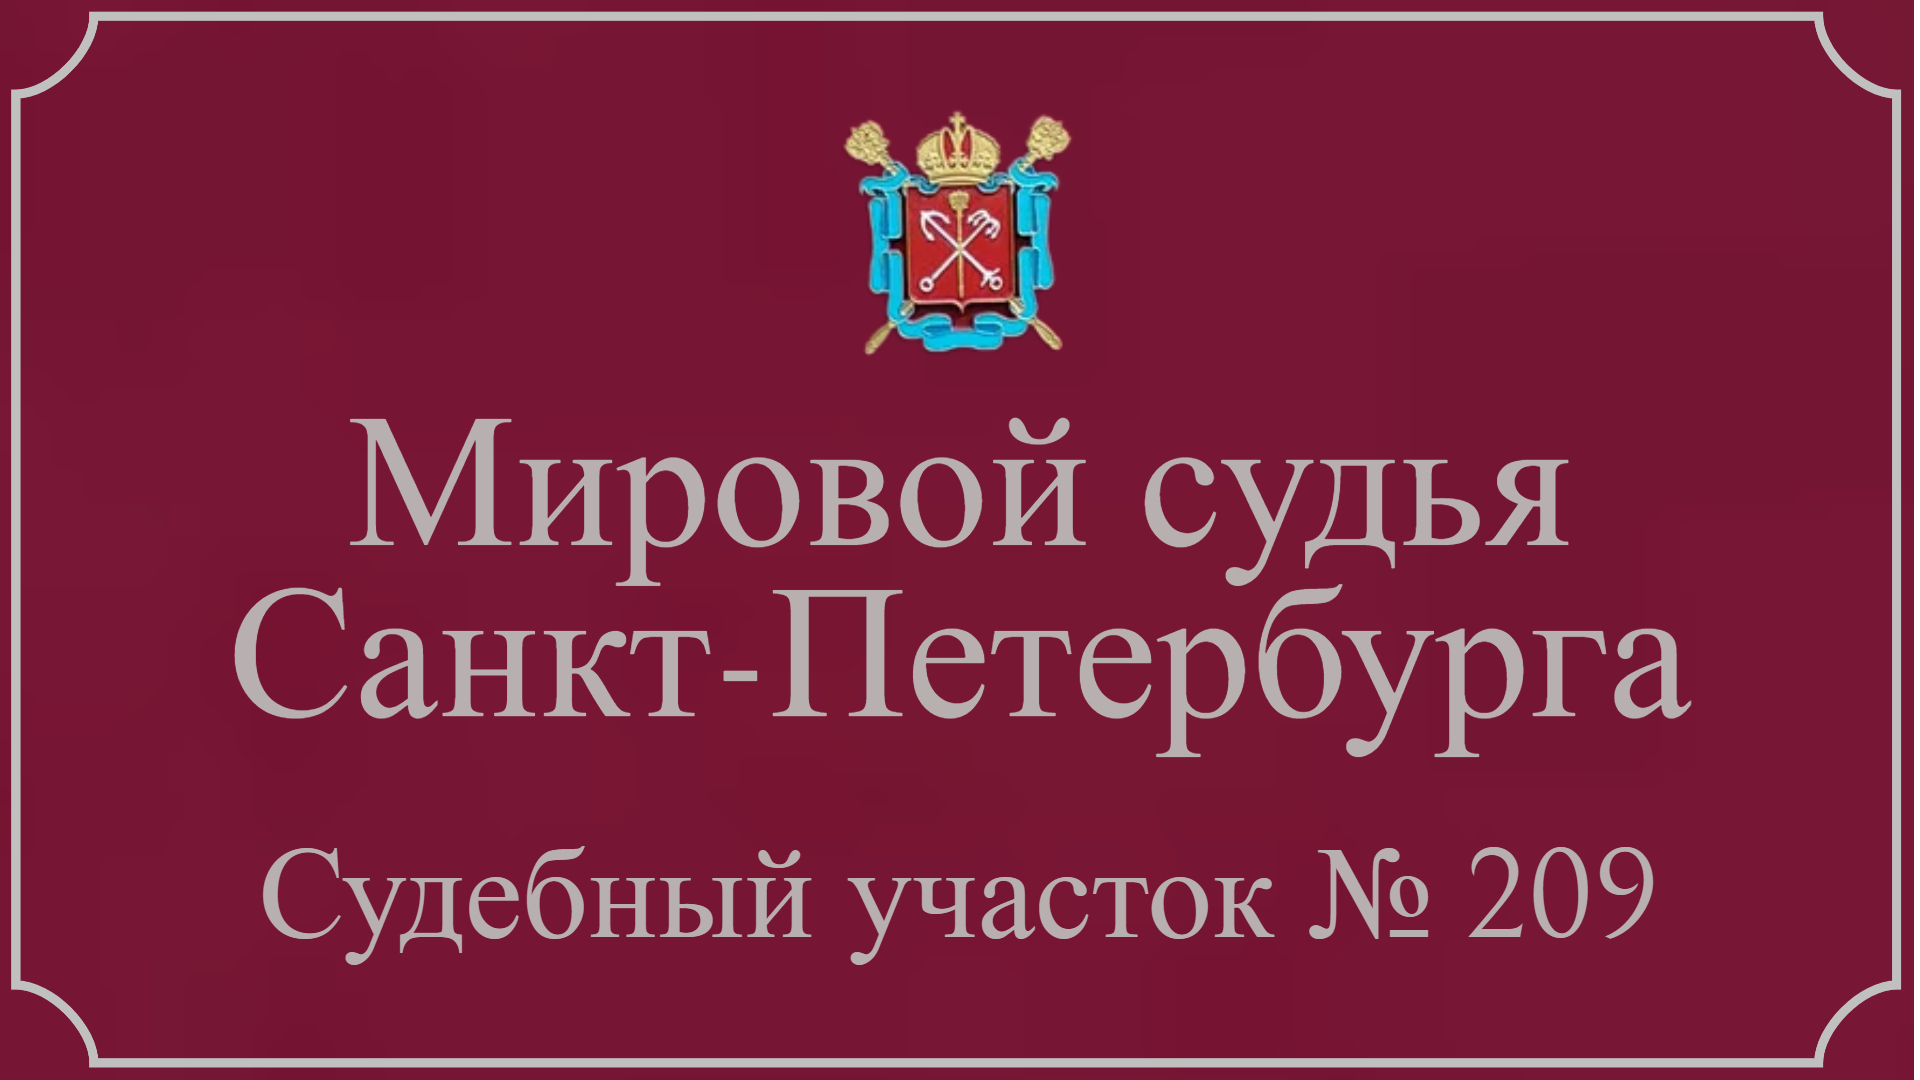 Информация по 209 судебному участку в Санкт-Петербурге.